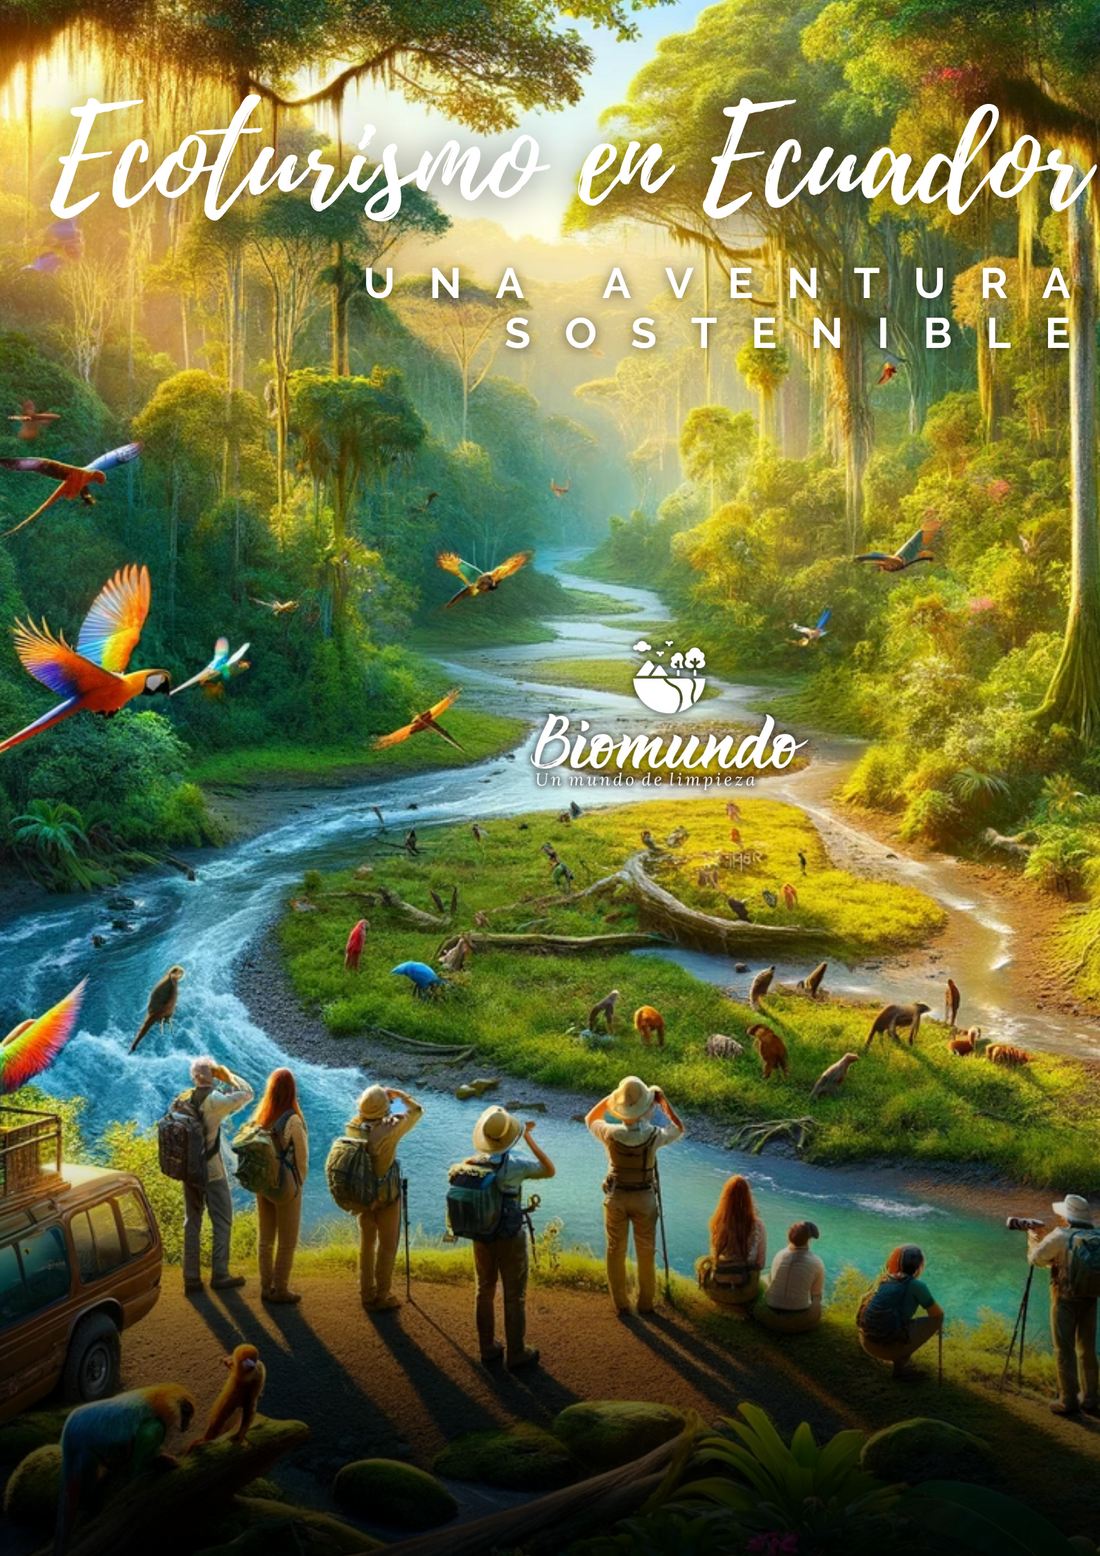 Ecoturismo en Ecuador